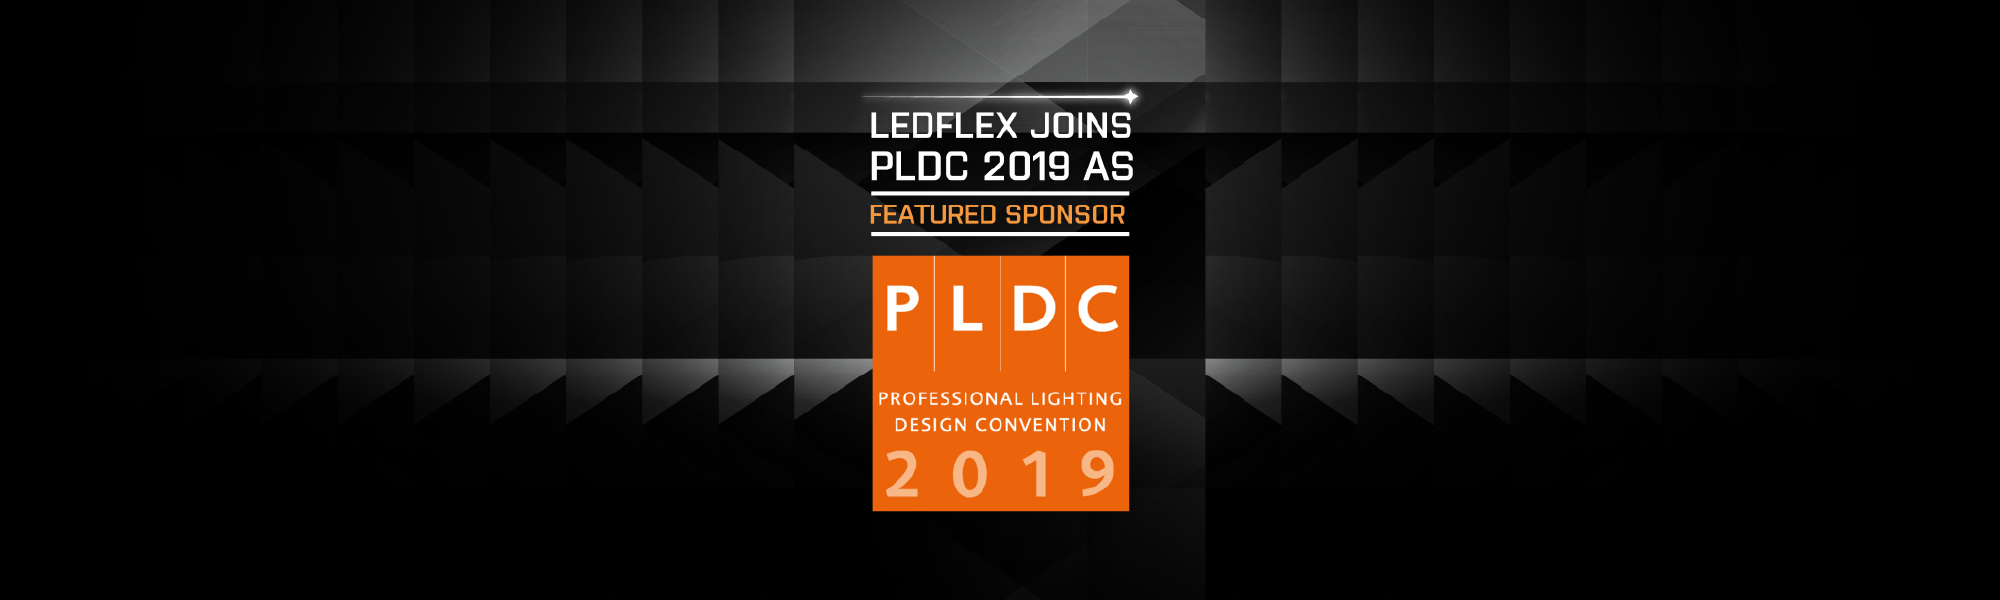 LEDFlex Joins PLDC 2019 as Featured Sponsor 